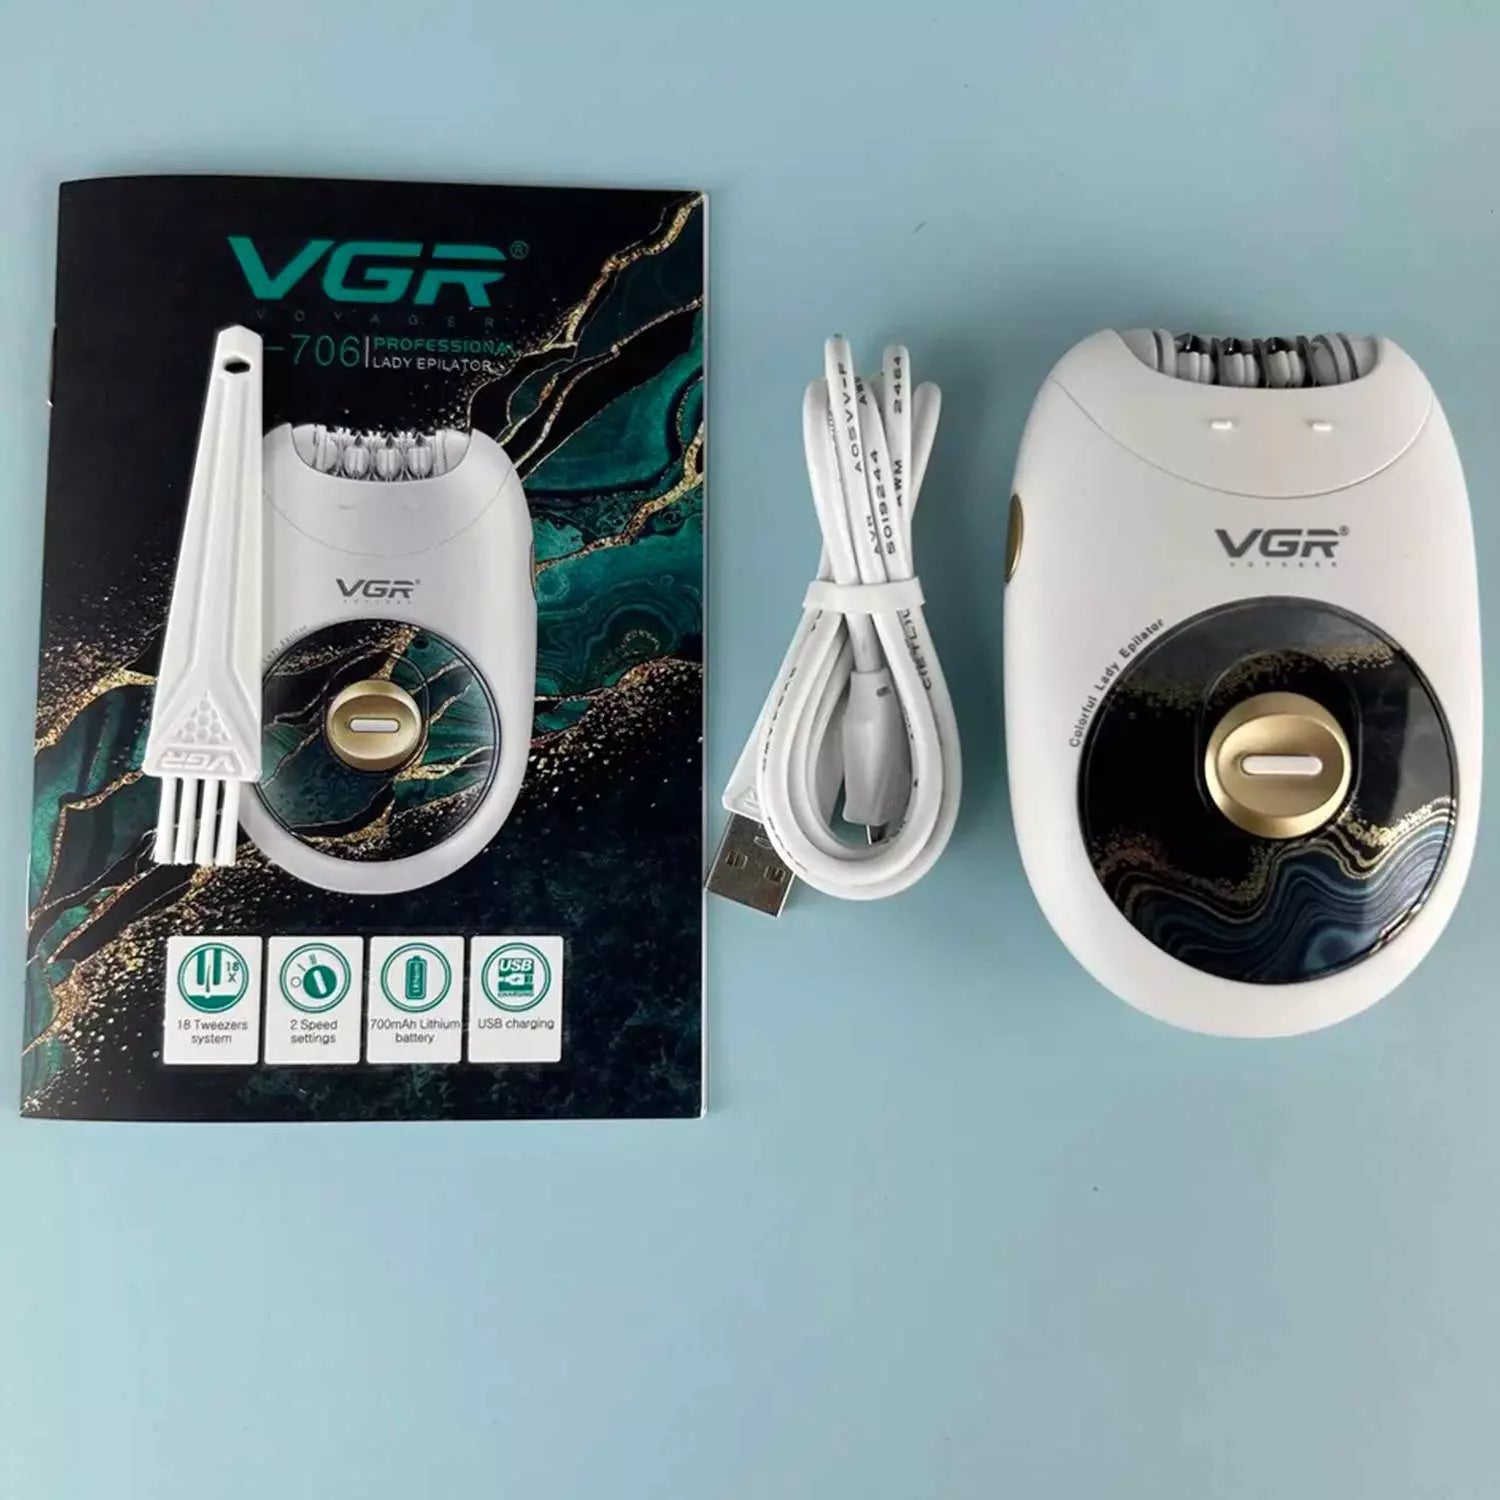 VGR, VGRindia, VGRofficial, VGR V-706